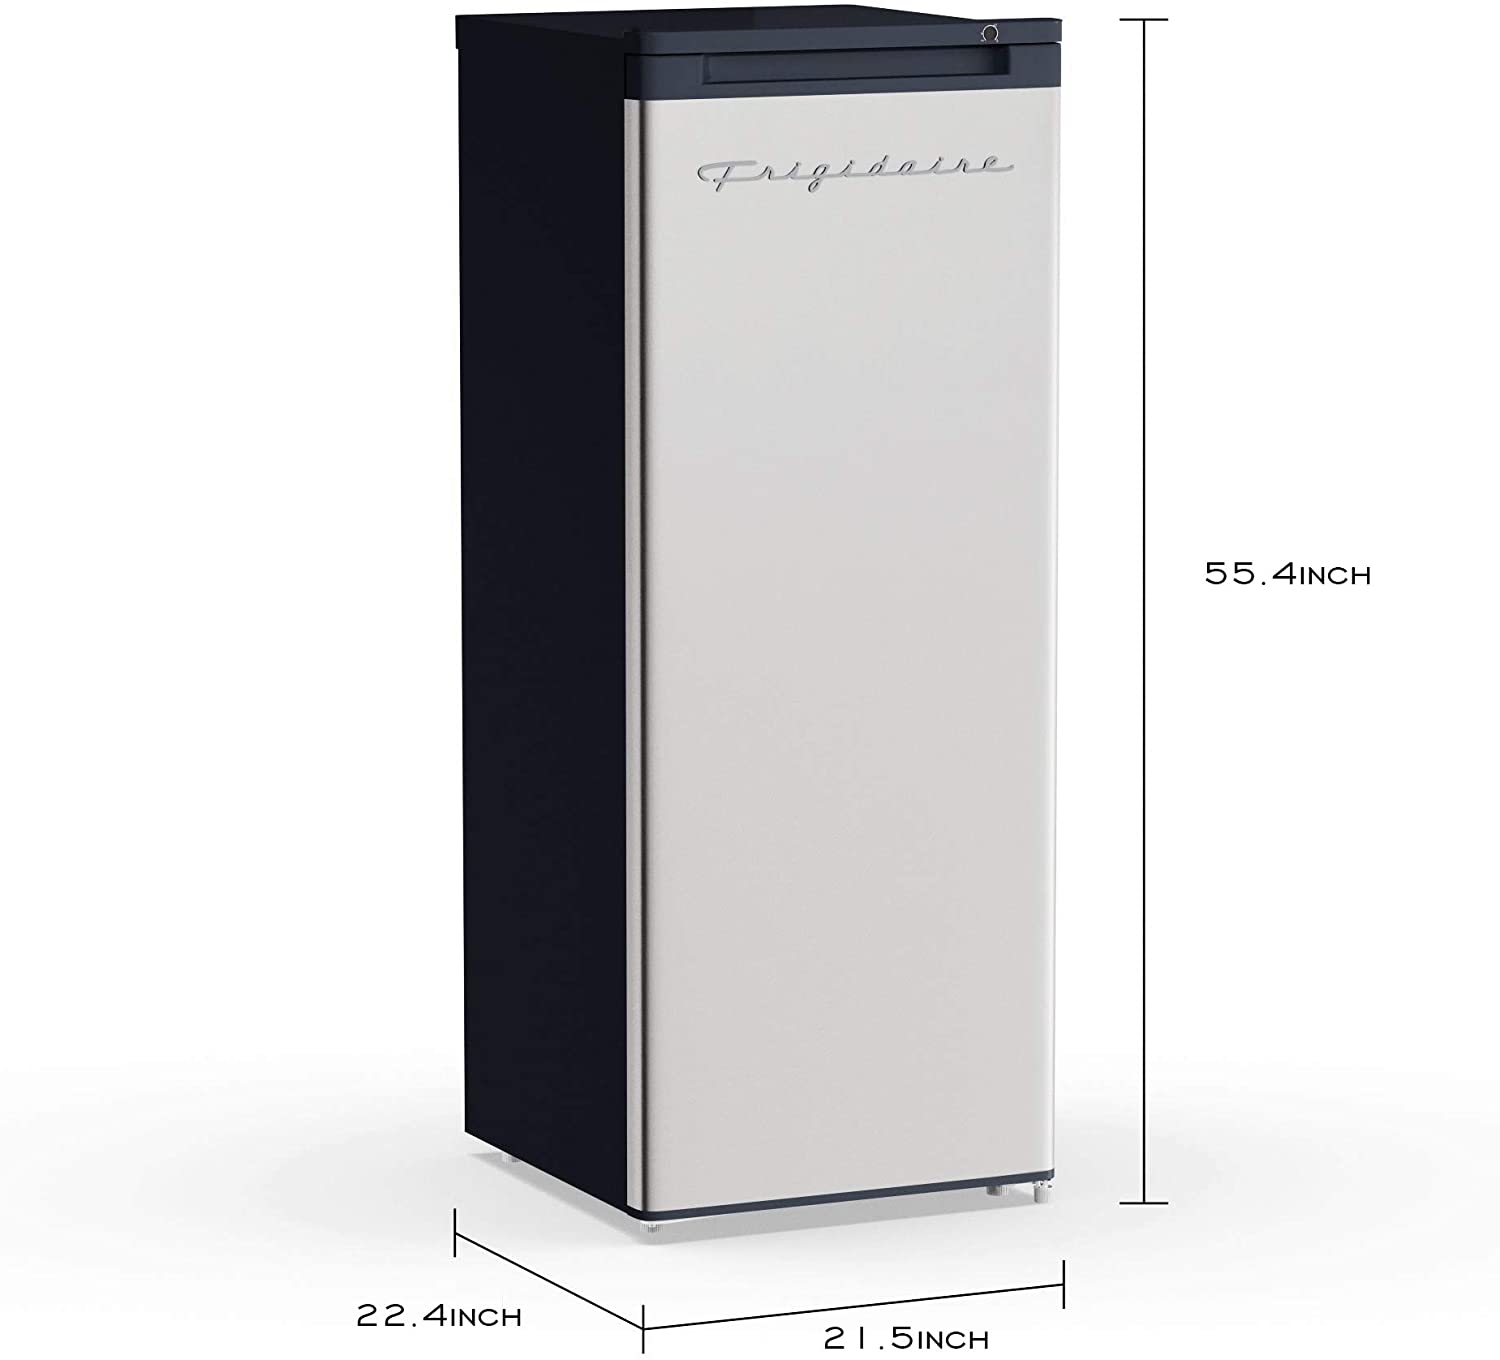 Frigidaire EFRF696-AMZ Upright Freezer 6.5 cu ft REVIEW 2022